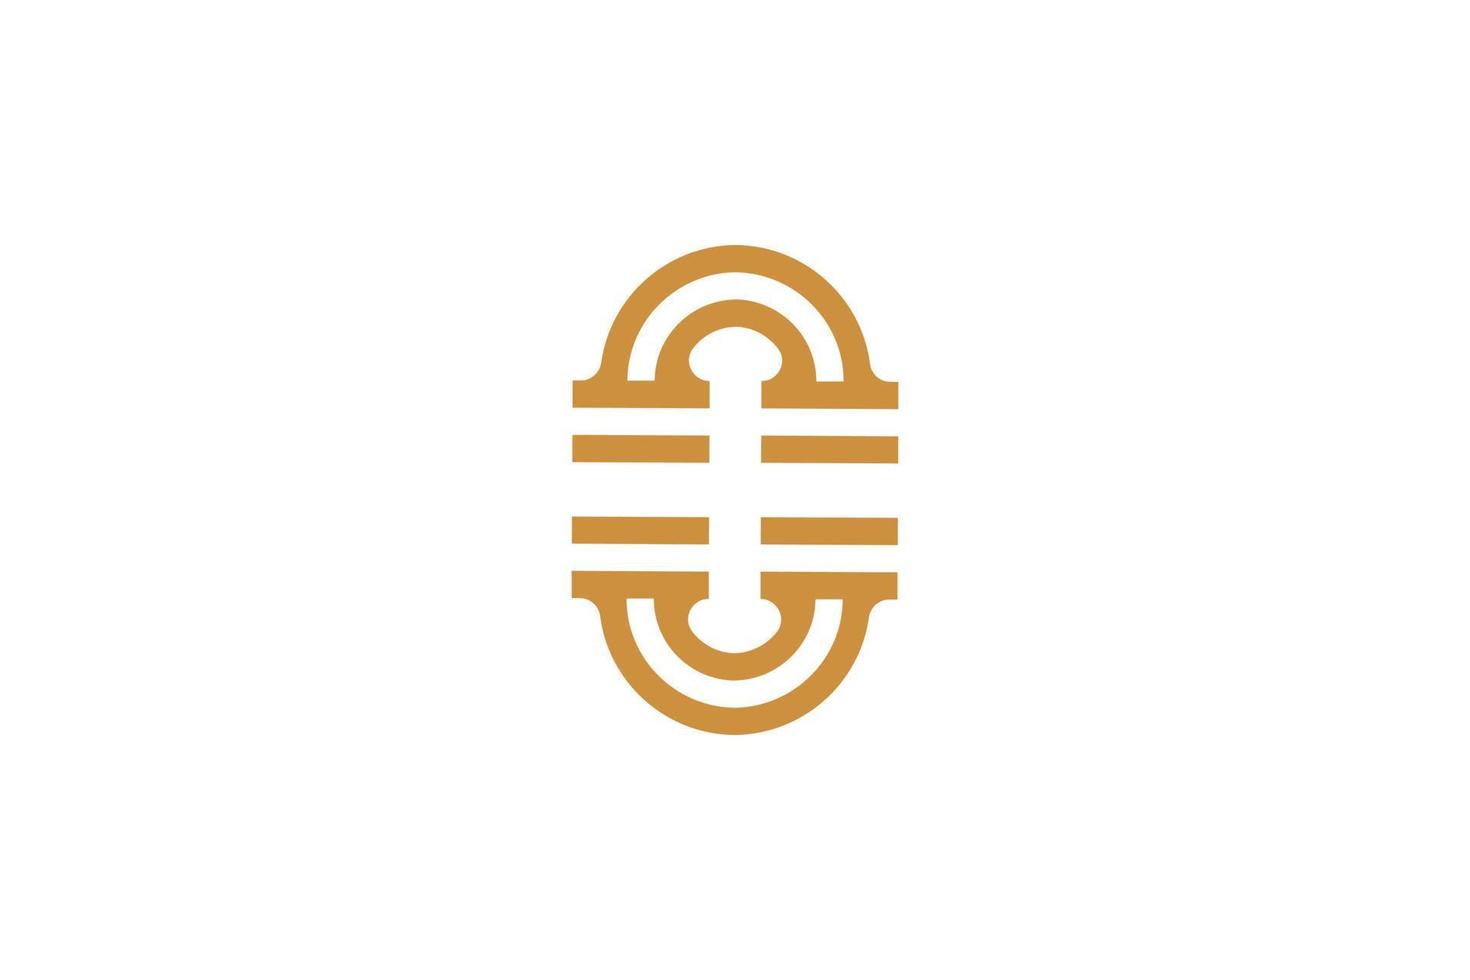 Monoline Letter Q Logo Template vector